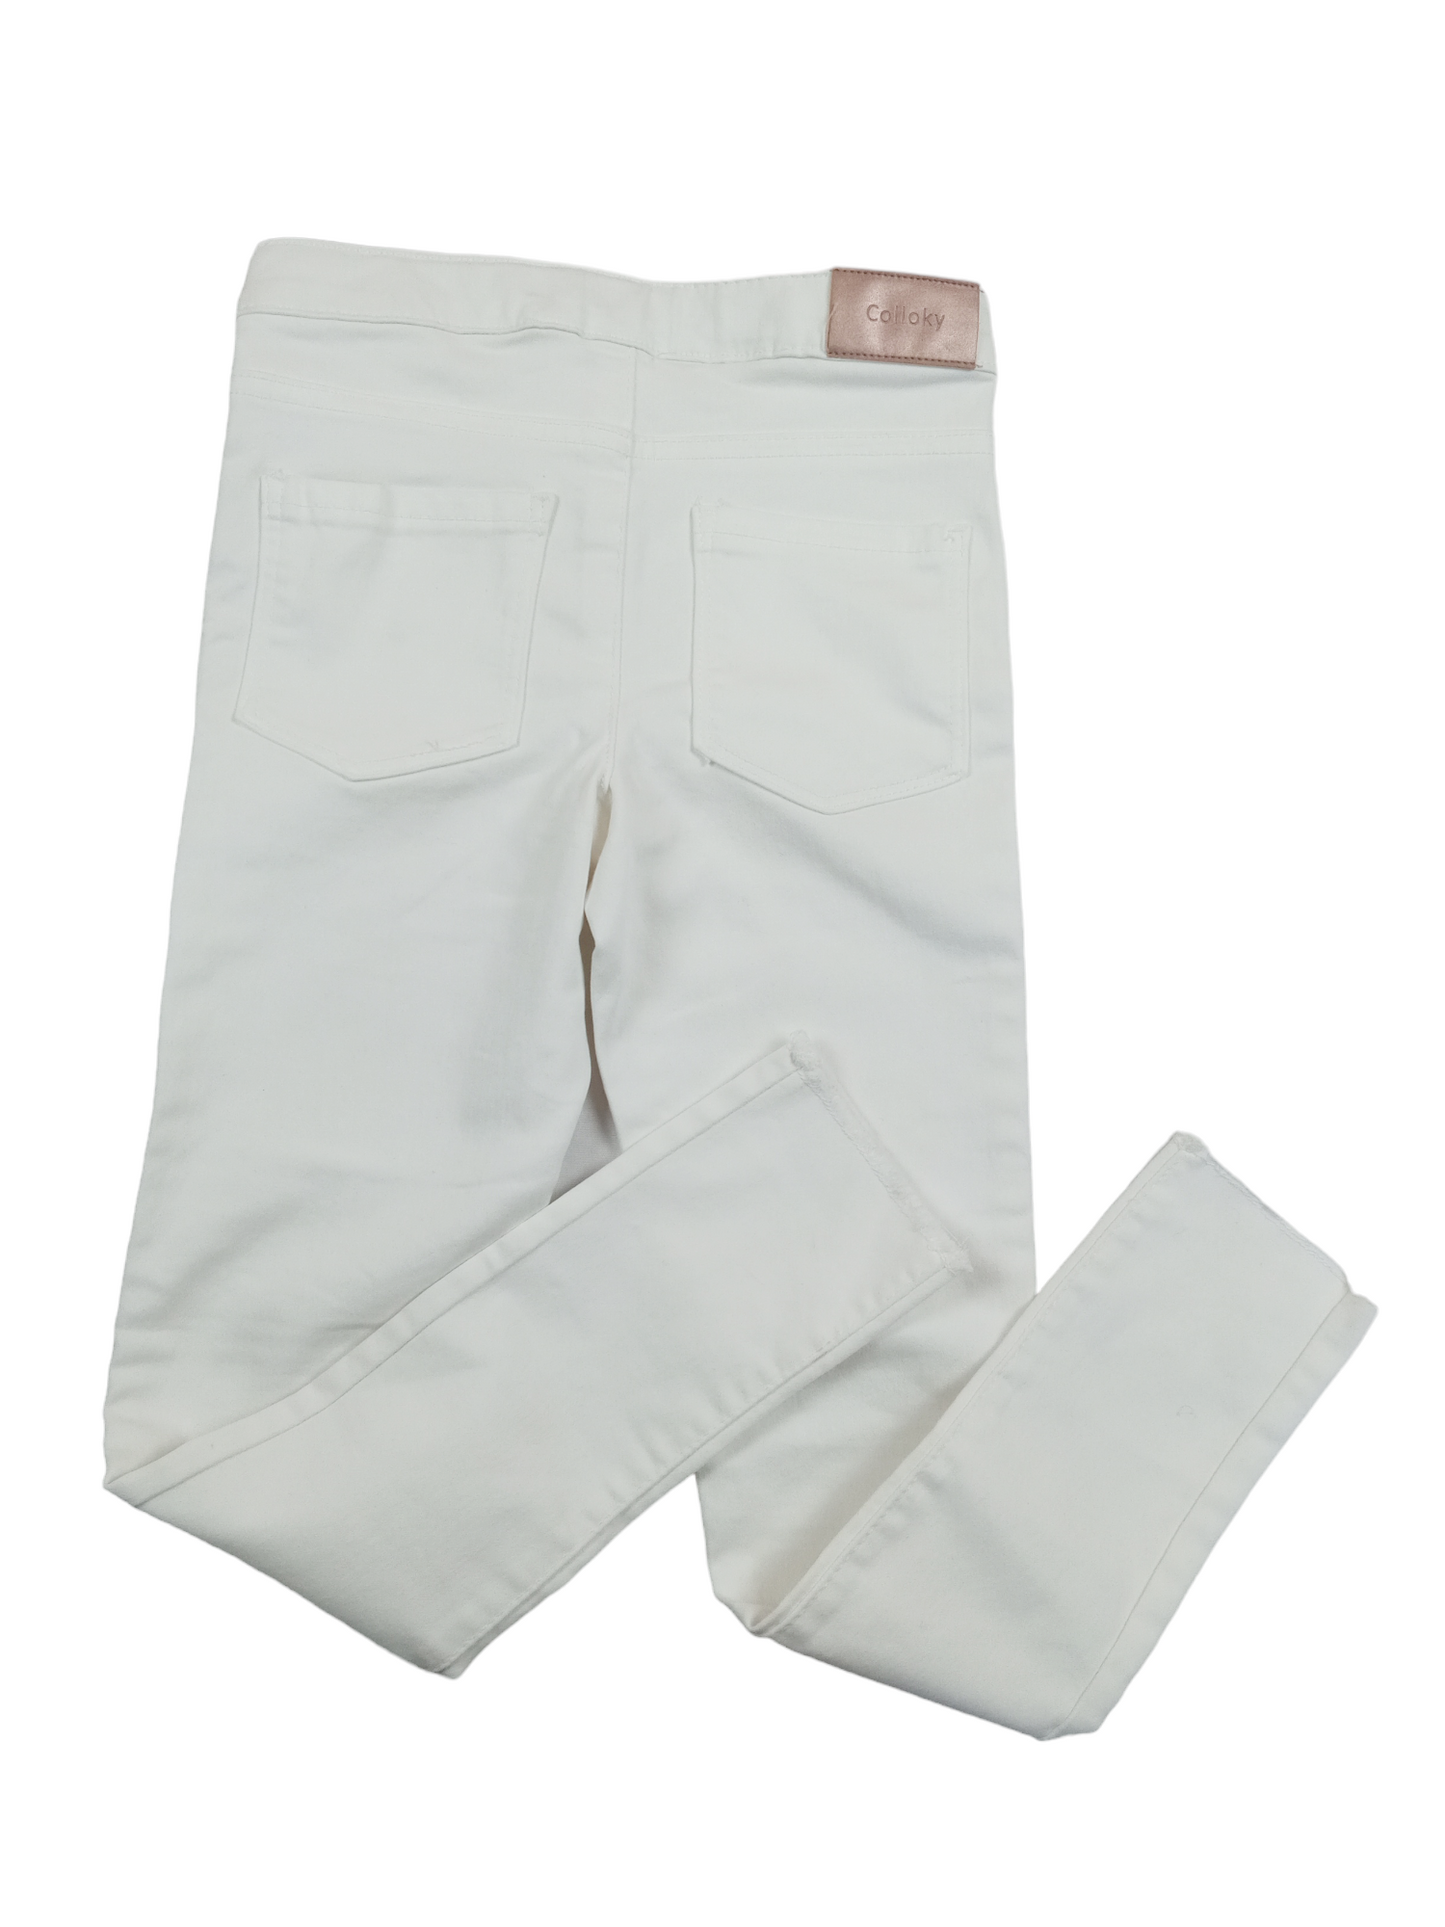 Pantalón blanco elásticado / Talla 8